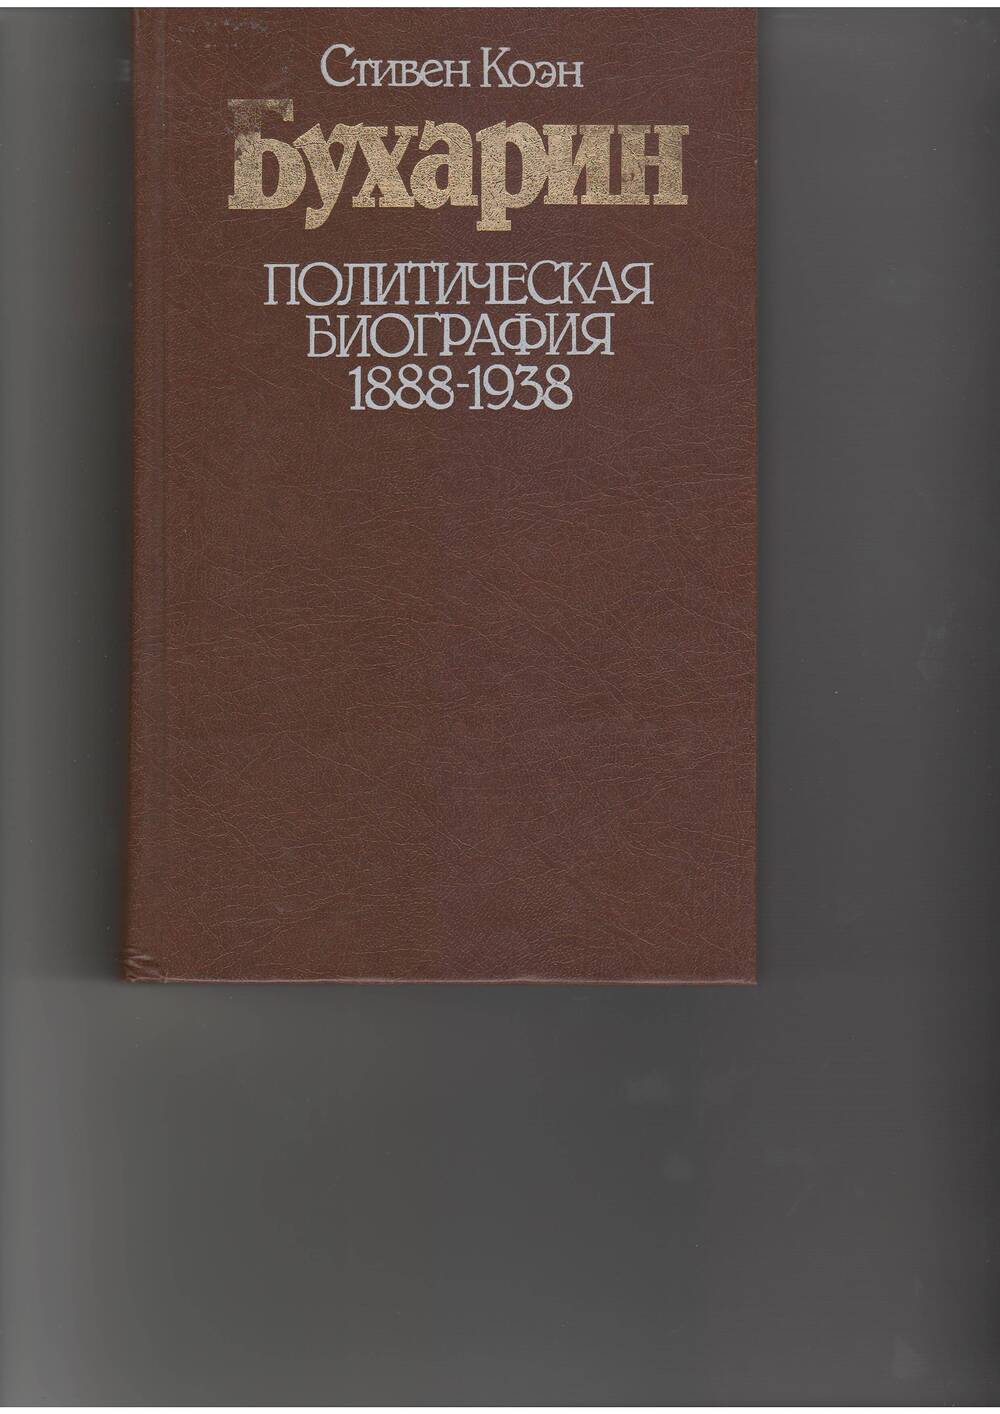 книга Коэн С. Бухарин. Политическая биография. - М: Прогресс,1988